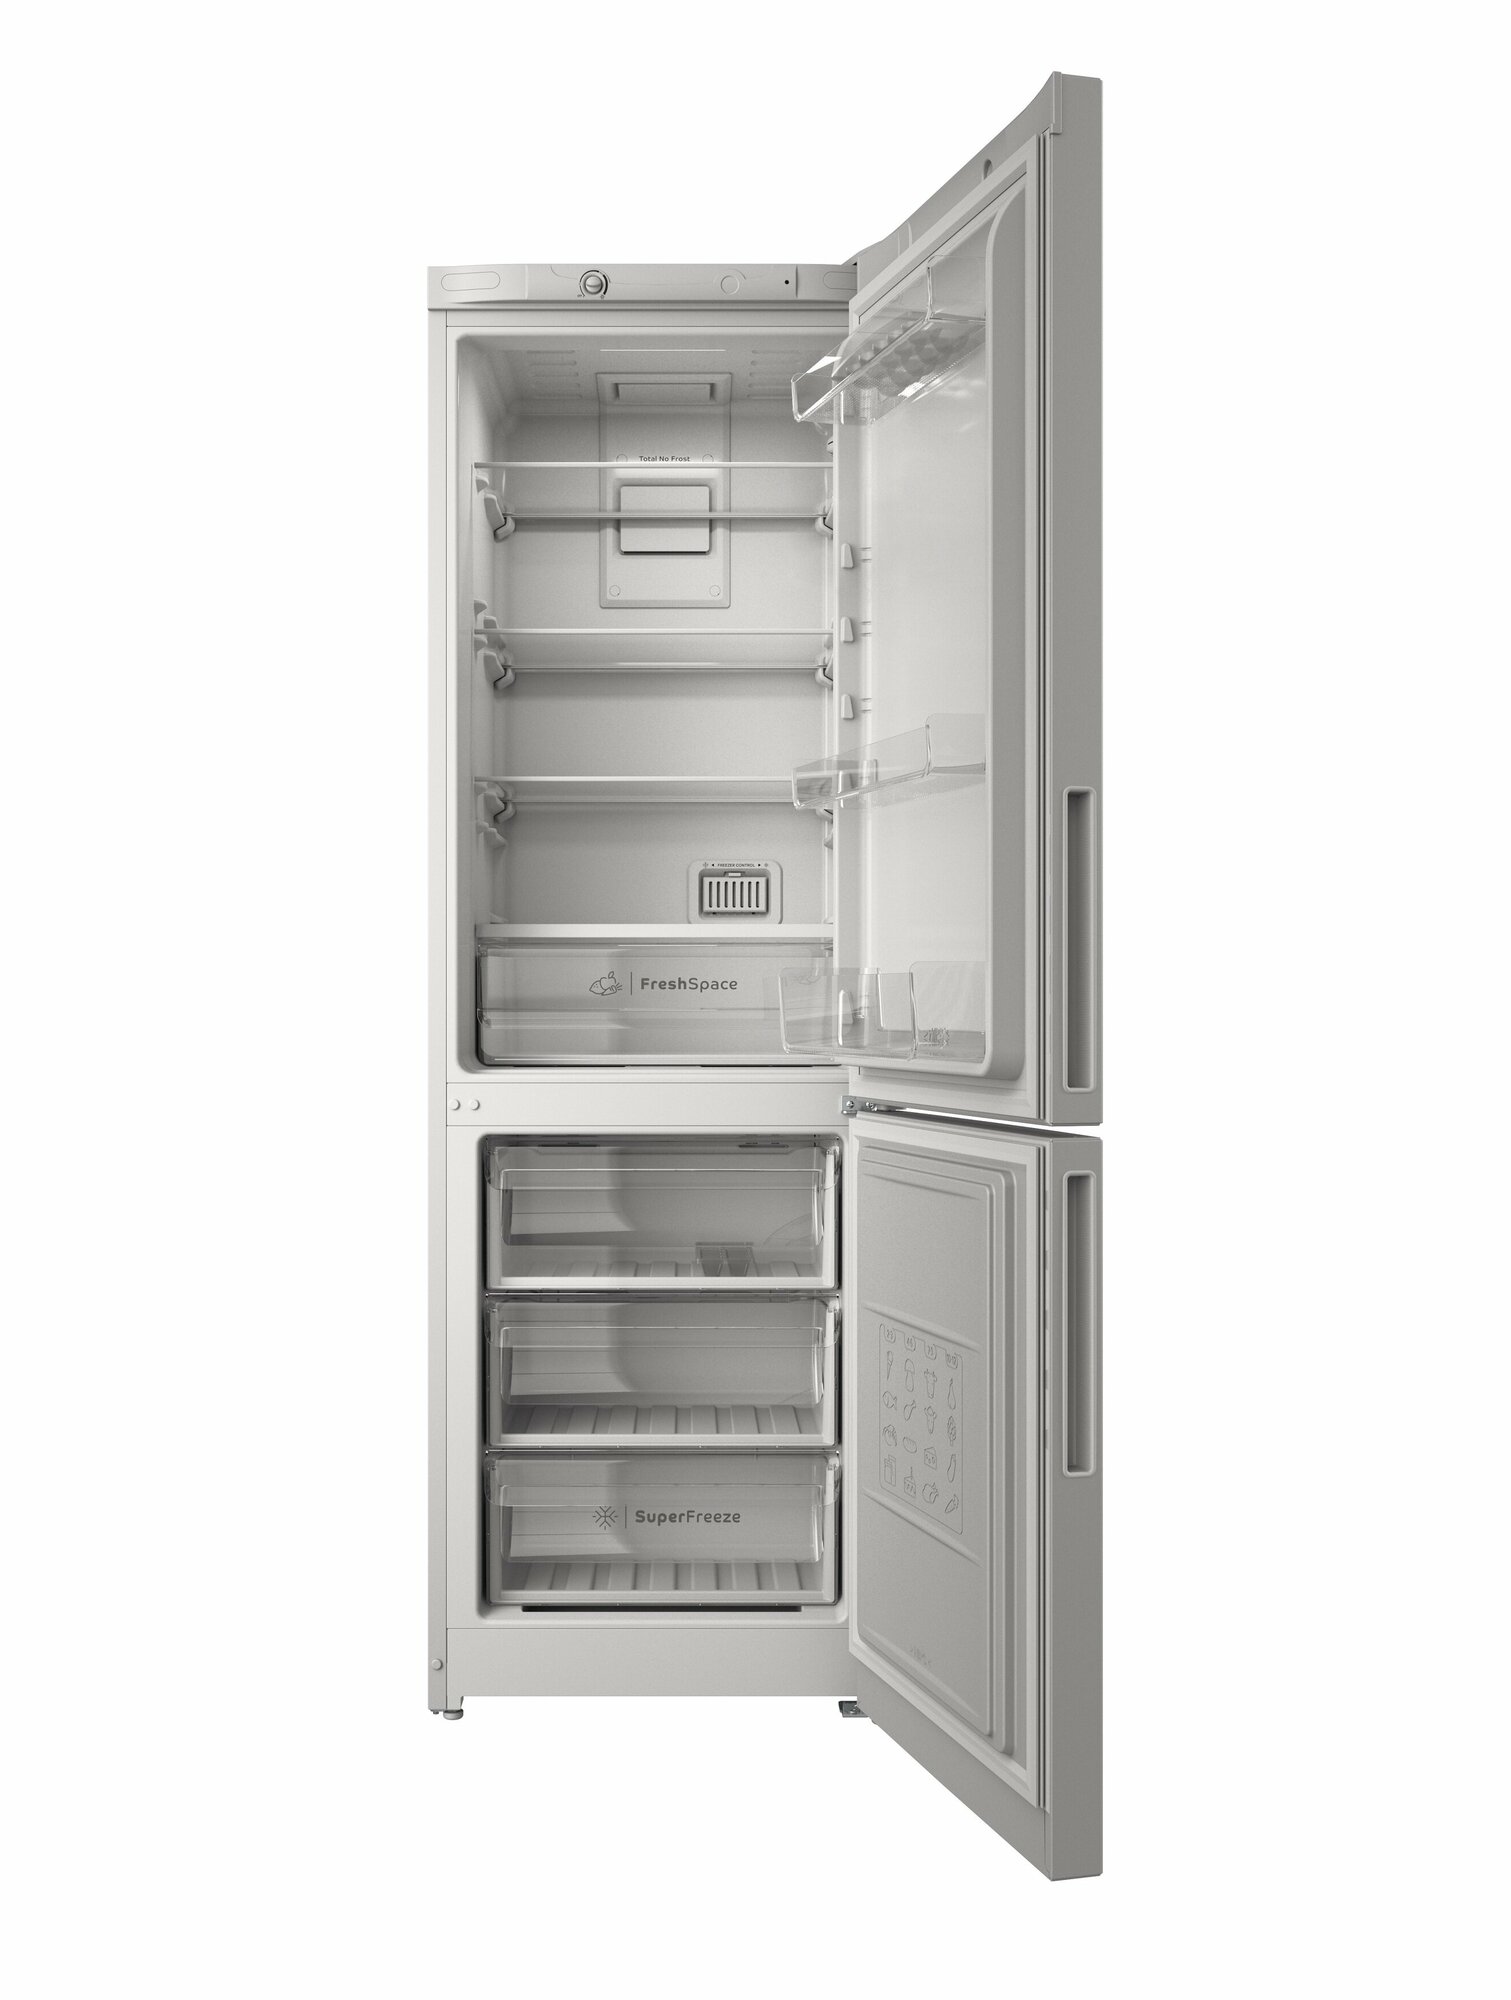 Отдельно стоящий холодильник Indesit с морозильной камерой: frost free ITR 4180 W